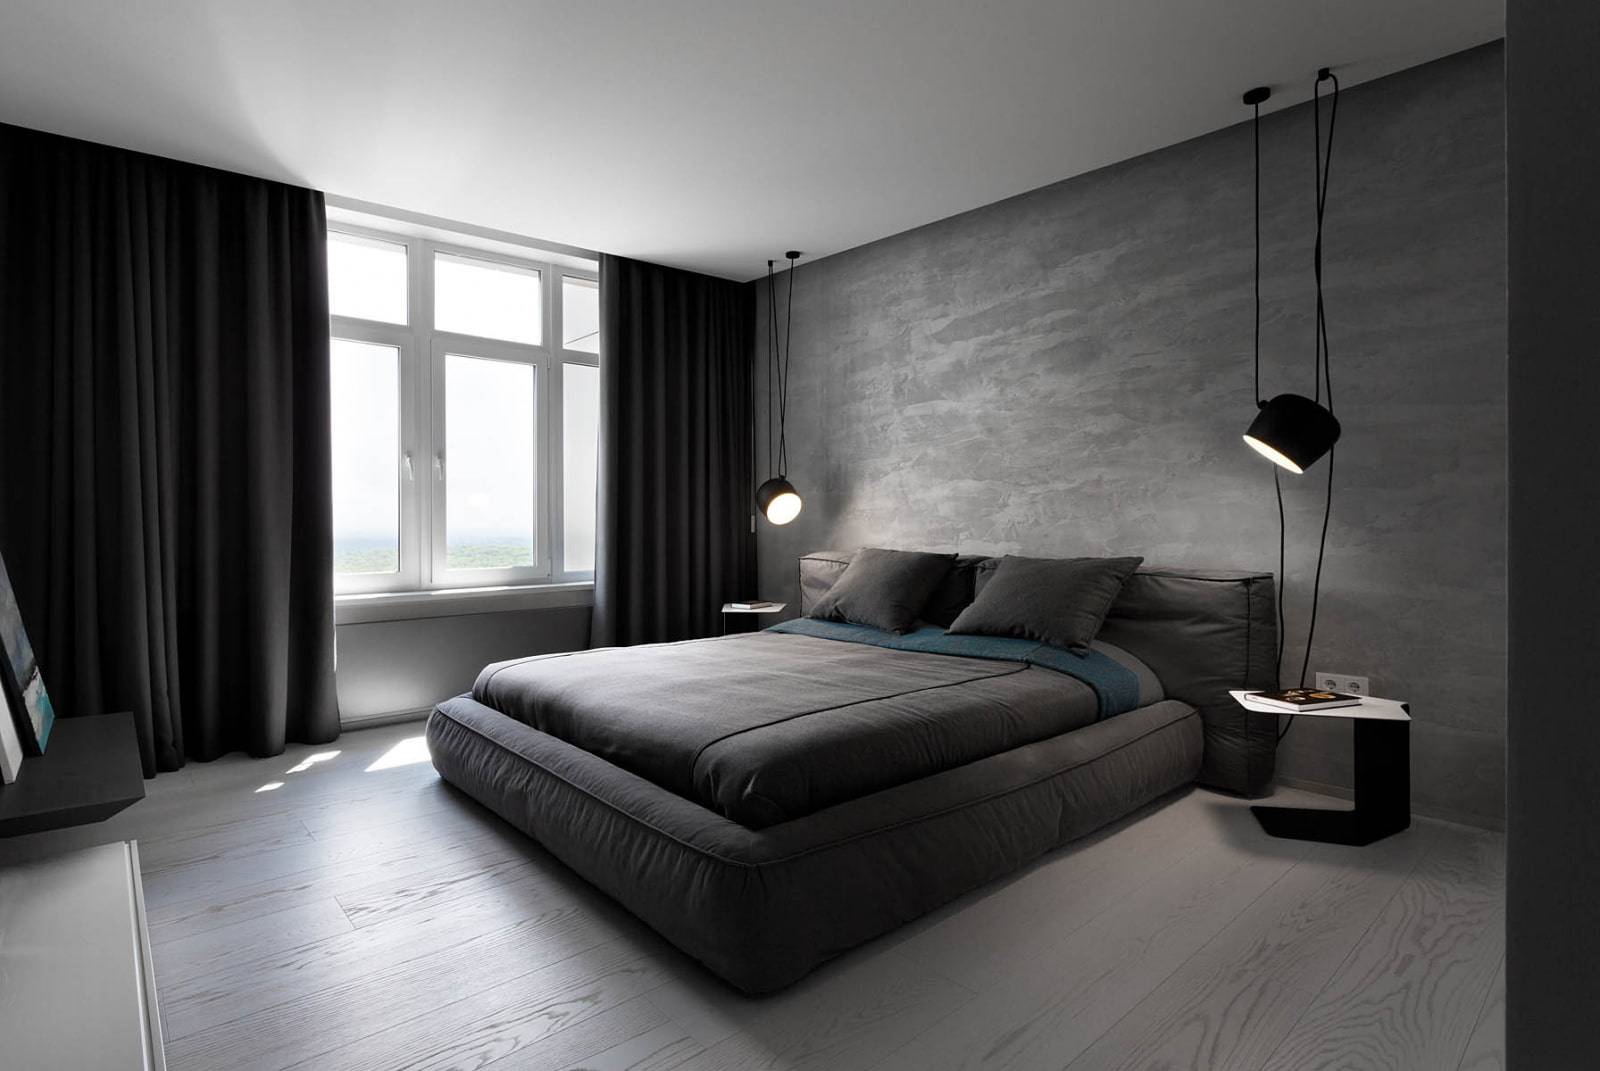 Дизайн спальни минимализм: отделка спальни в стиле минимализм